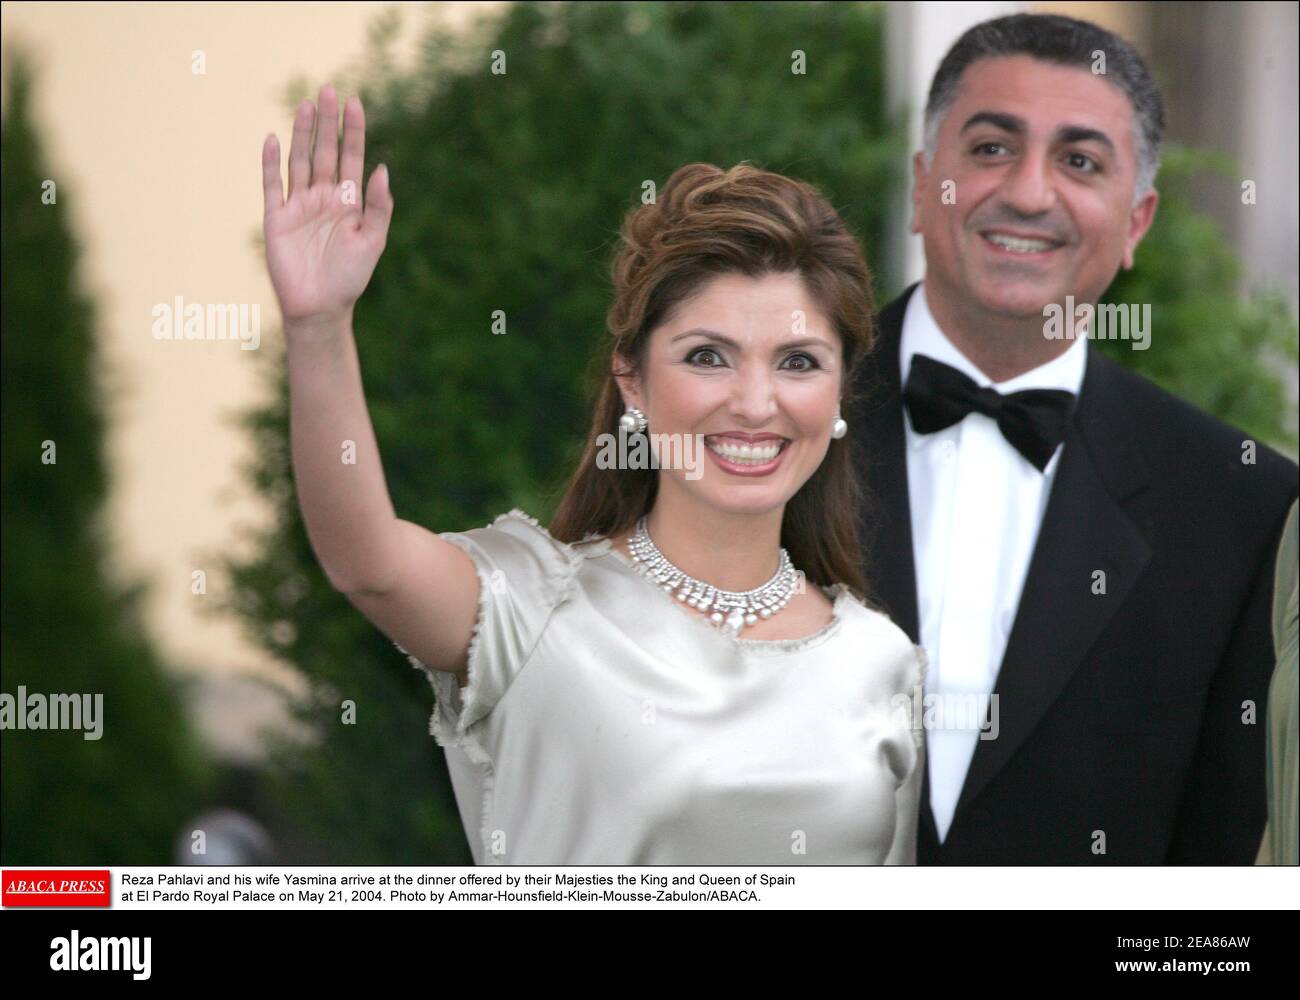 Reza Pahlavi und seine Frau Yasmina kommen am 21. Mai 2004 zum Abendessen ihrer Majestäten, dem König und der Königin von Spanien, im Königspalast El Pardo an. Foto von Ammar-Hounsfield-Klein-Mousse-Zabulon/ABACA. Stockfoto